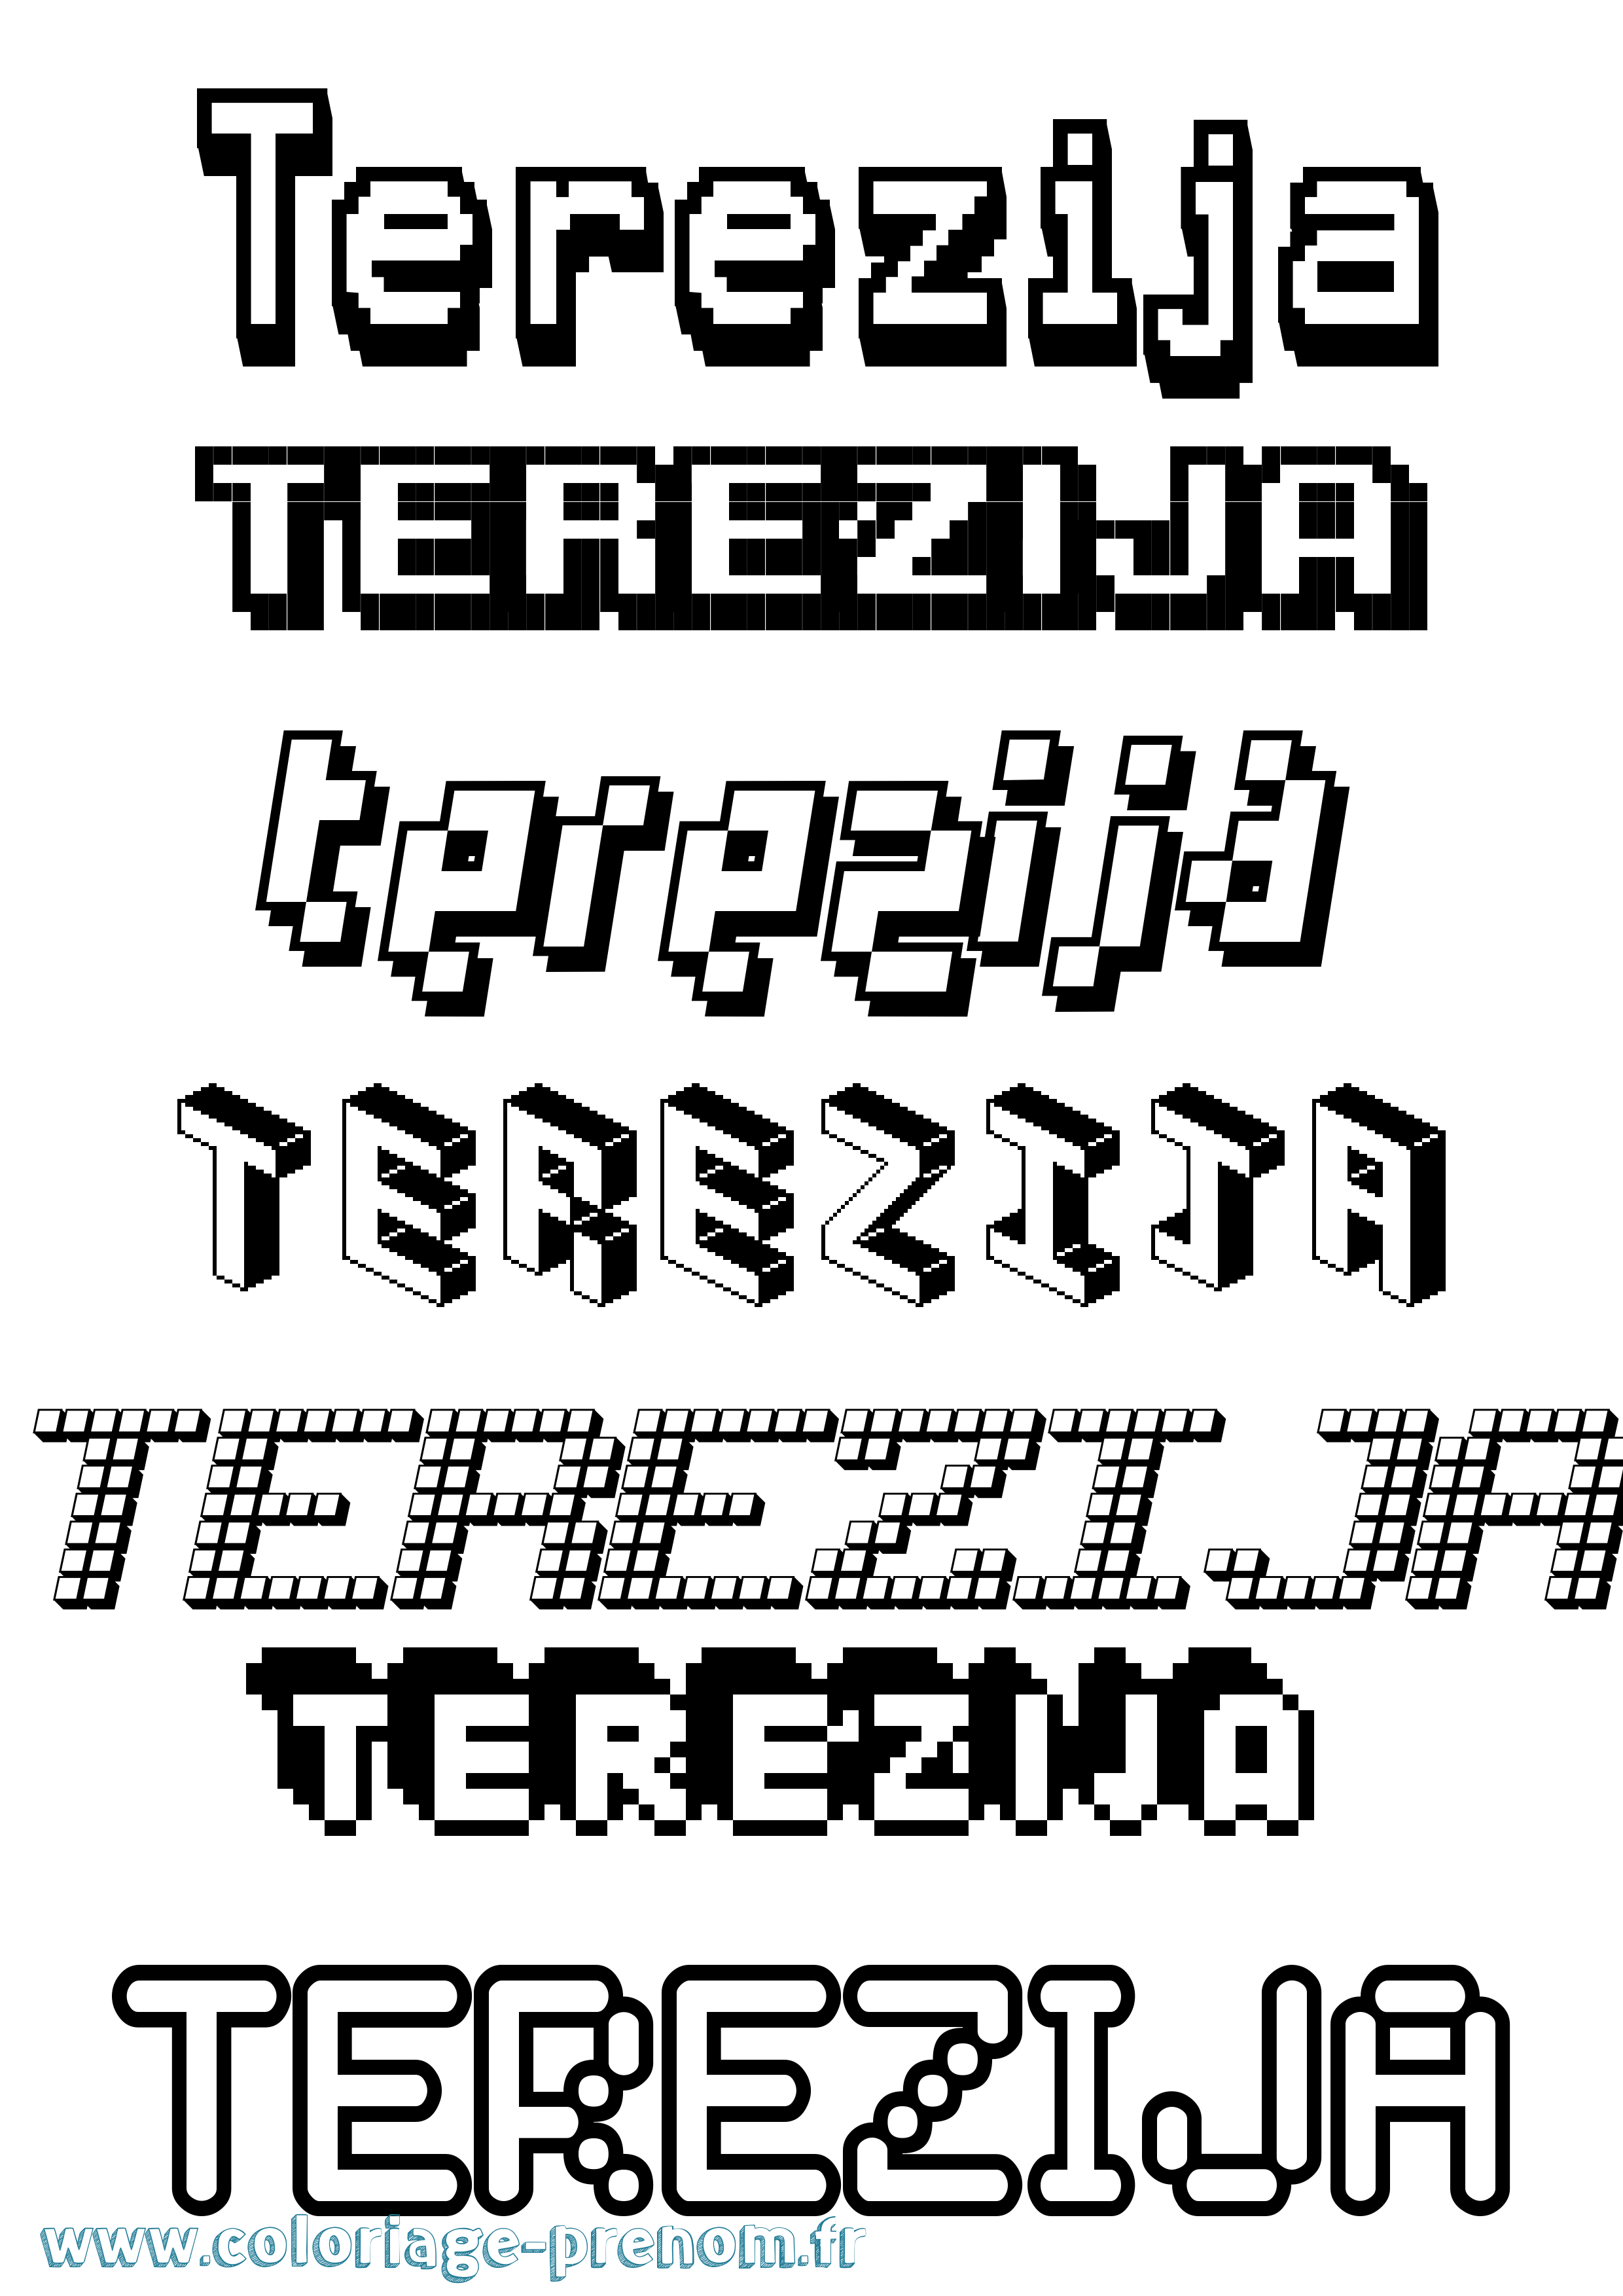 Coloriage prénom Terezija Pixel